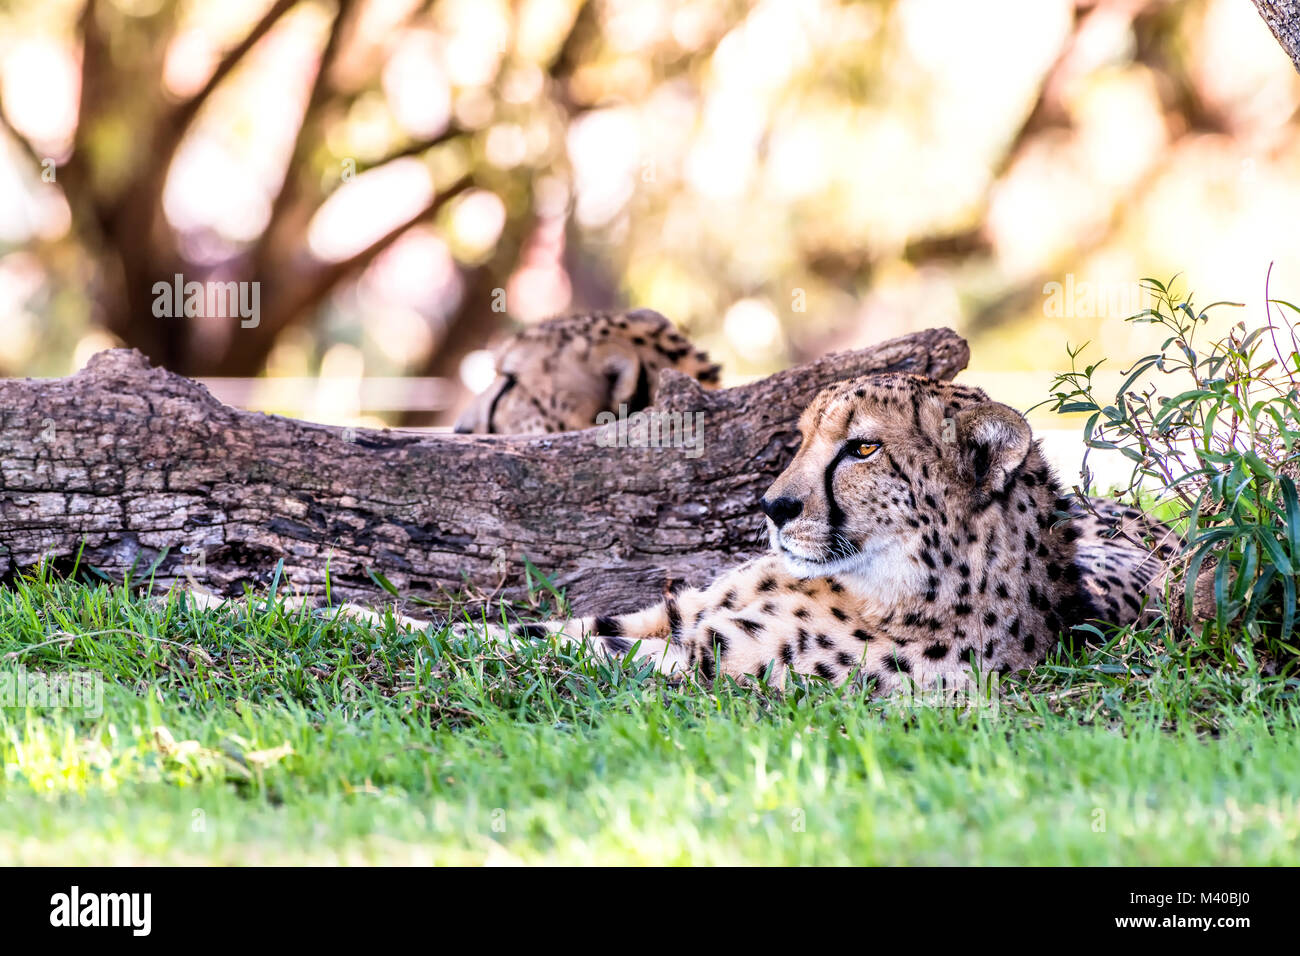 Eine leistungsstarke und schnelle Gepard liegt neben einer in einem schattigen Bereich während einer Safari anmelden Stockfoto